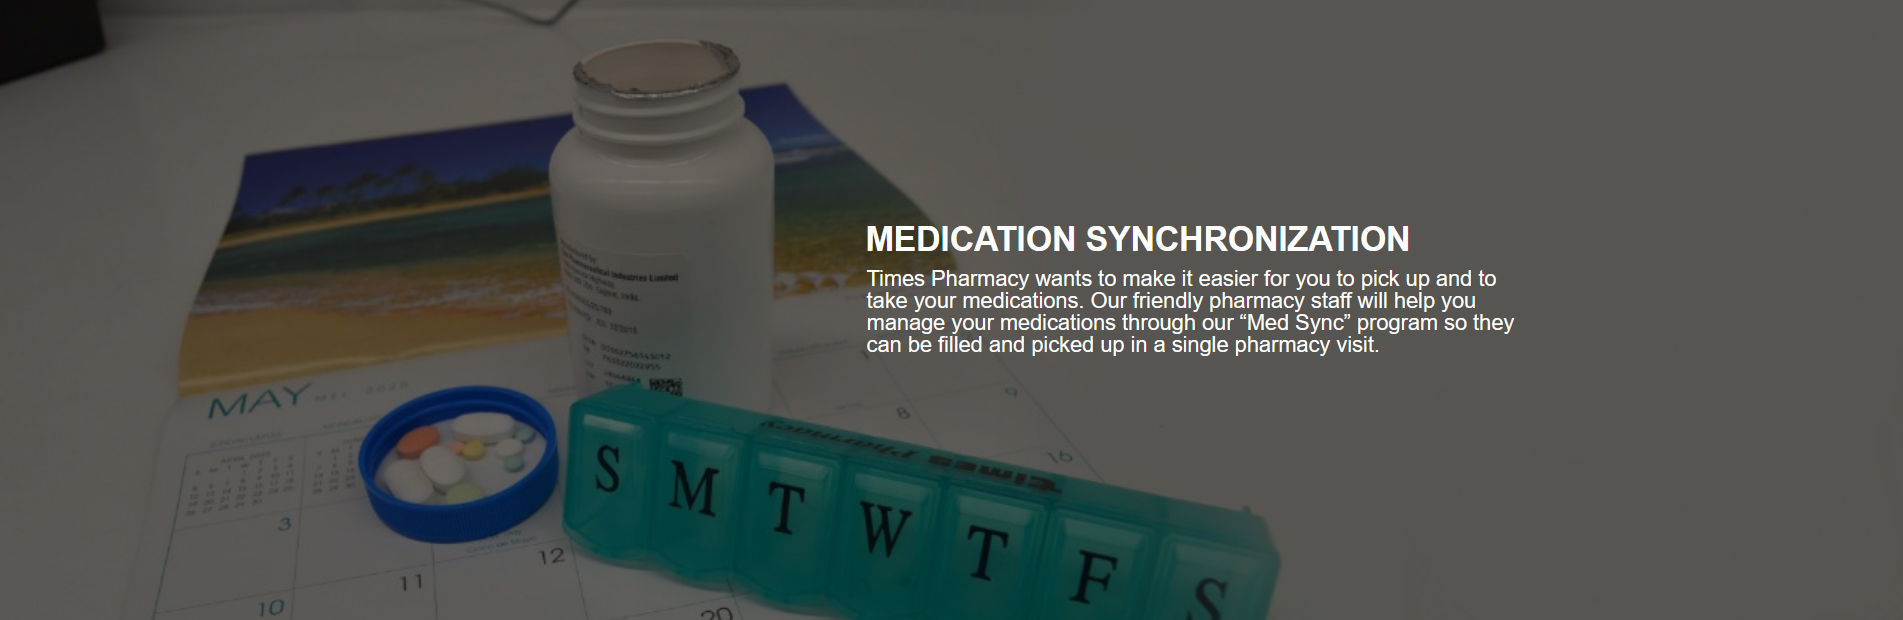 Medication Synchronization